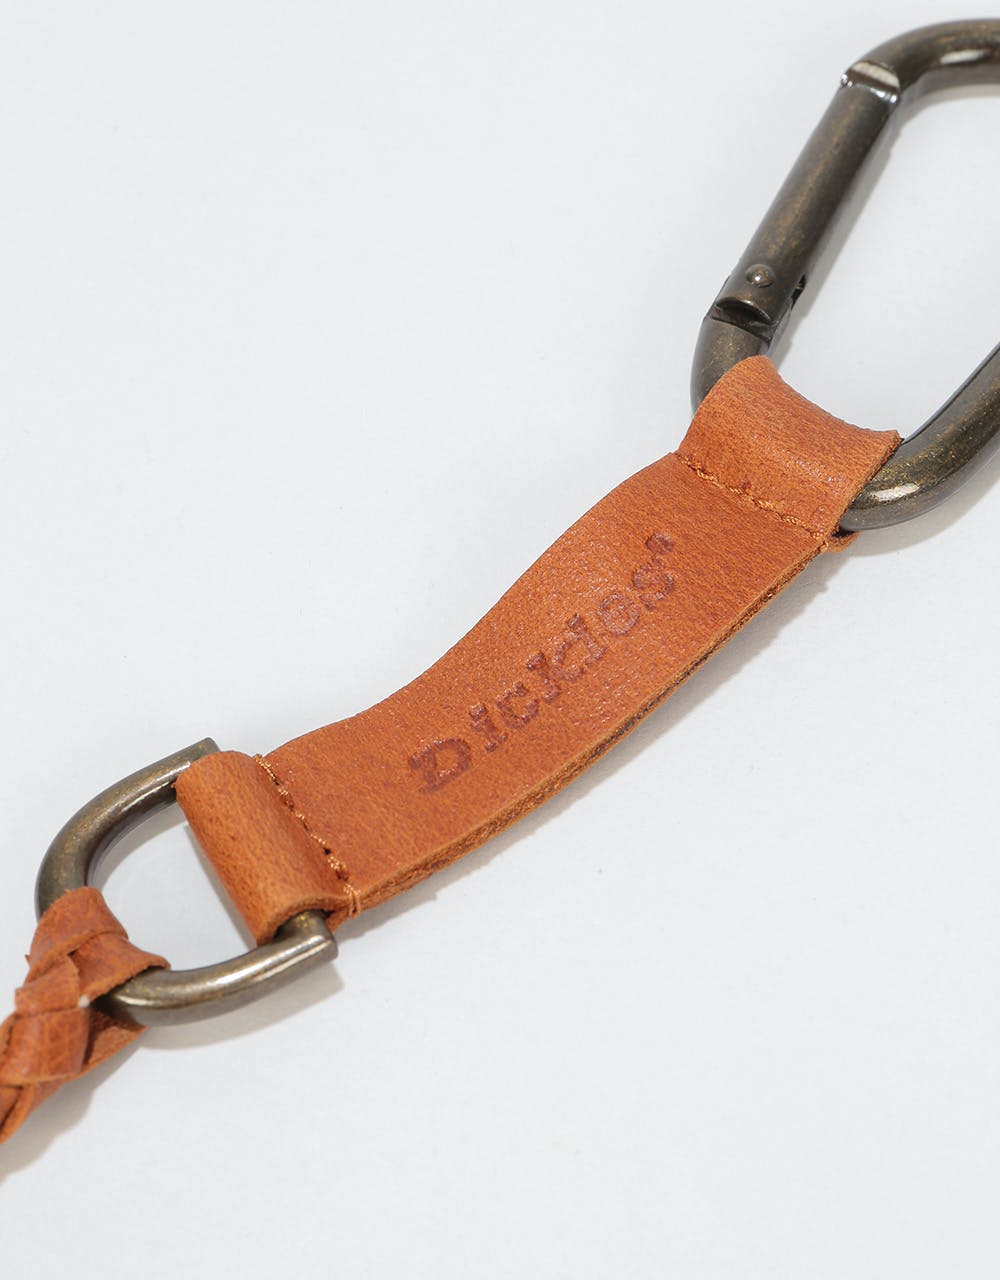 Dickies Vansant Leather Keychain - Brown